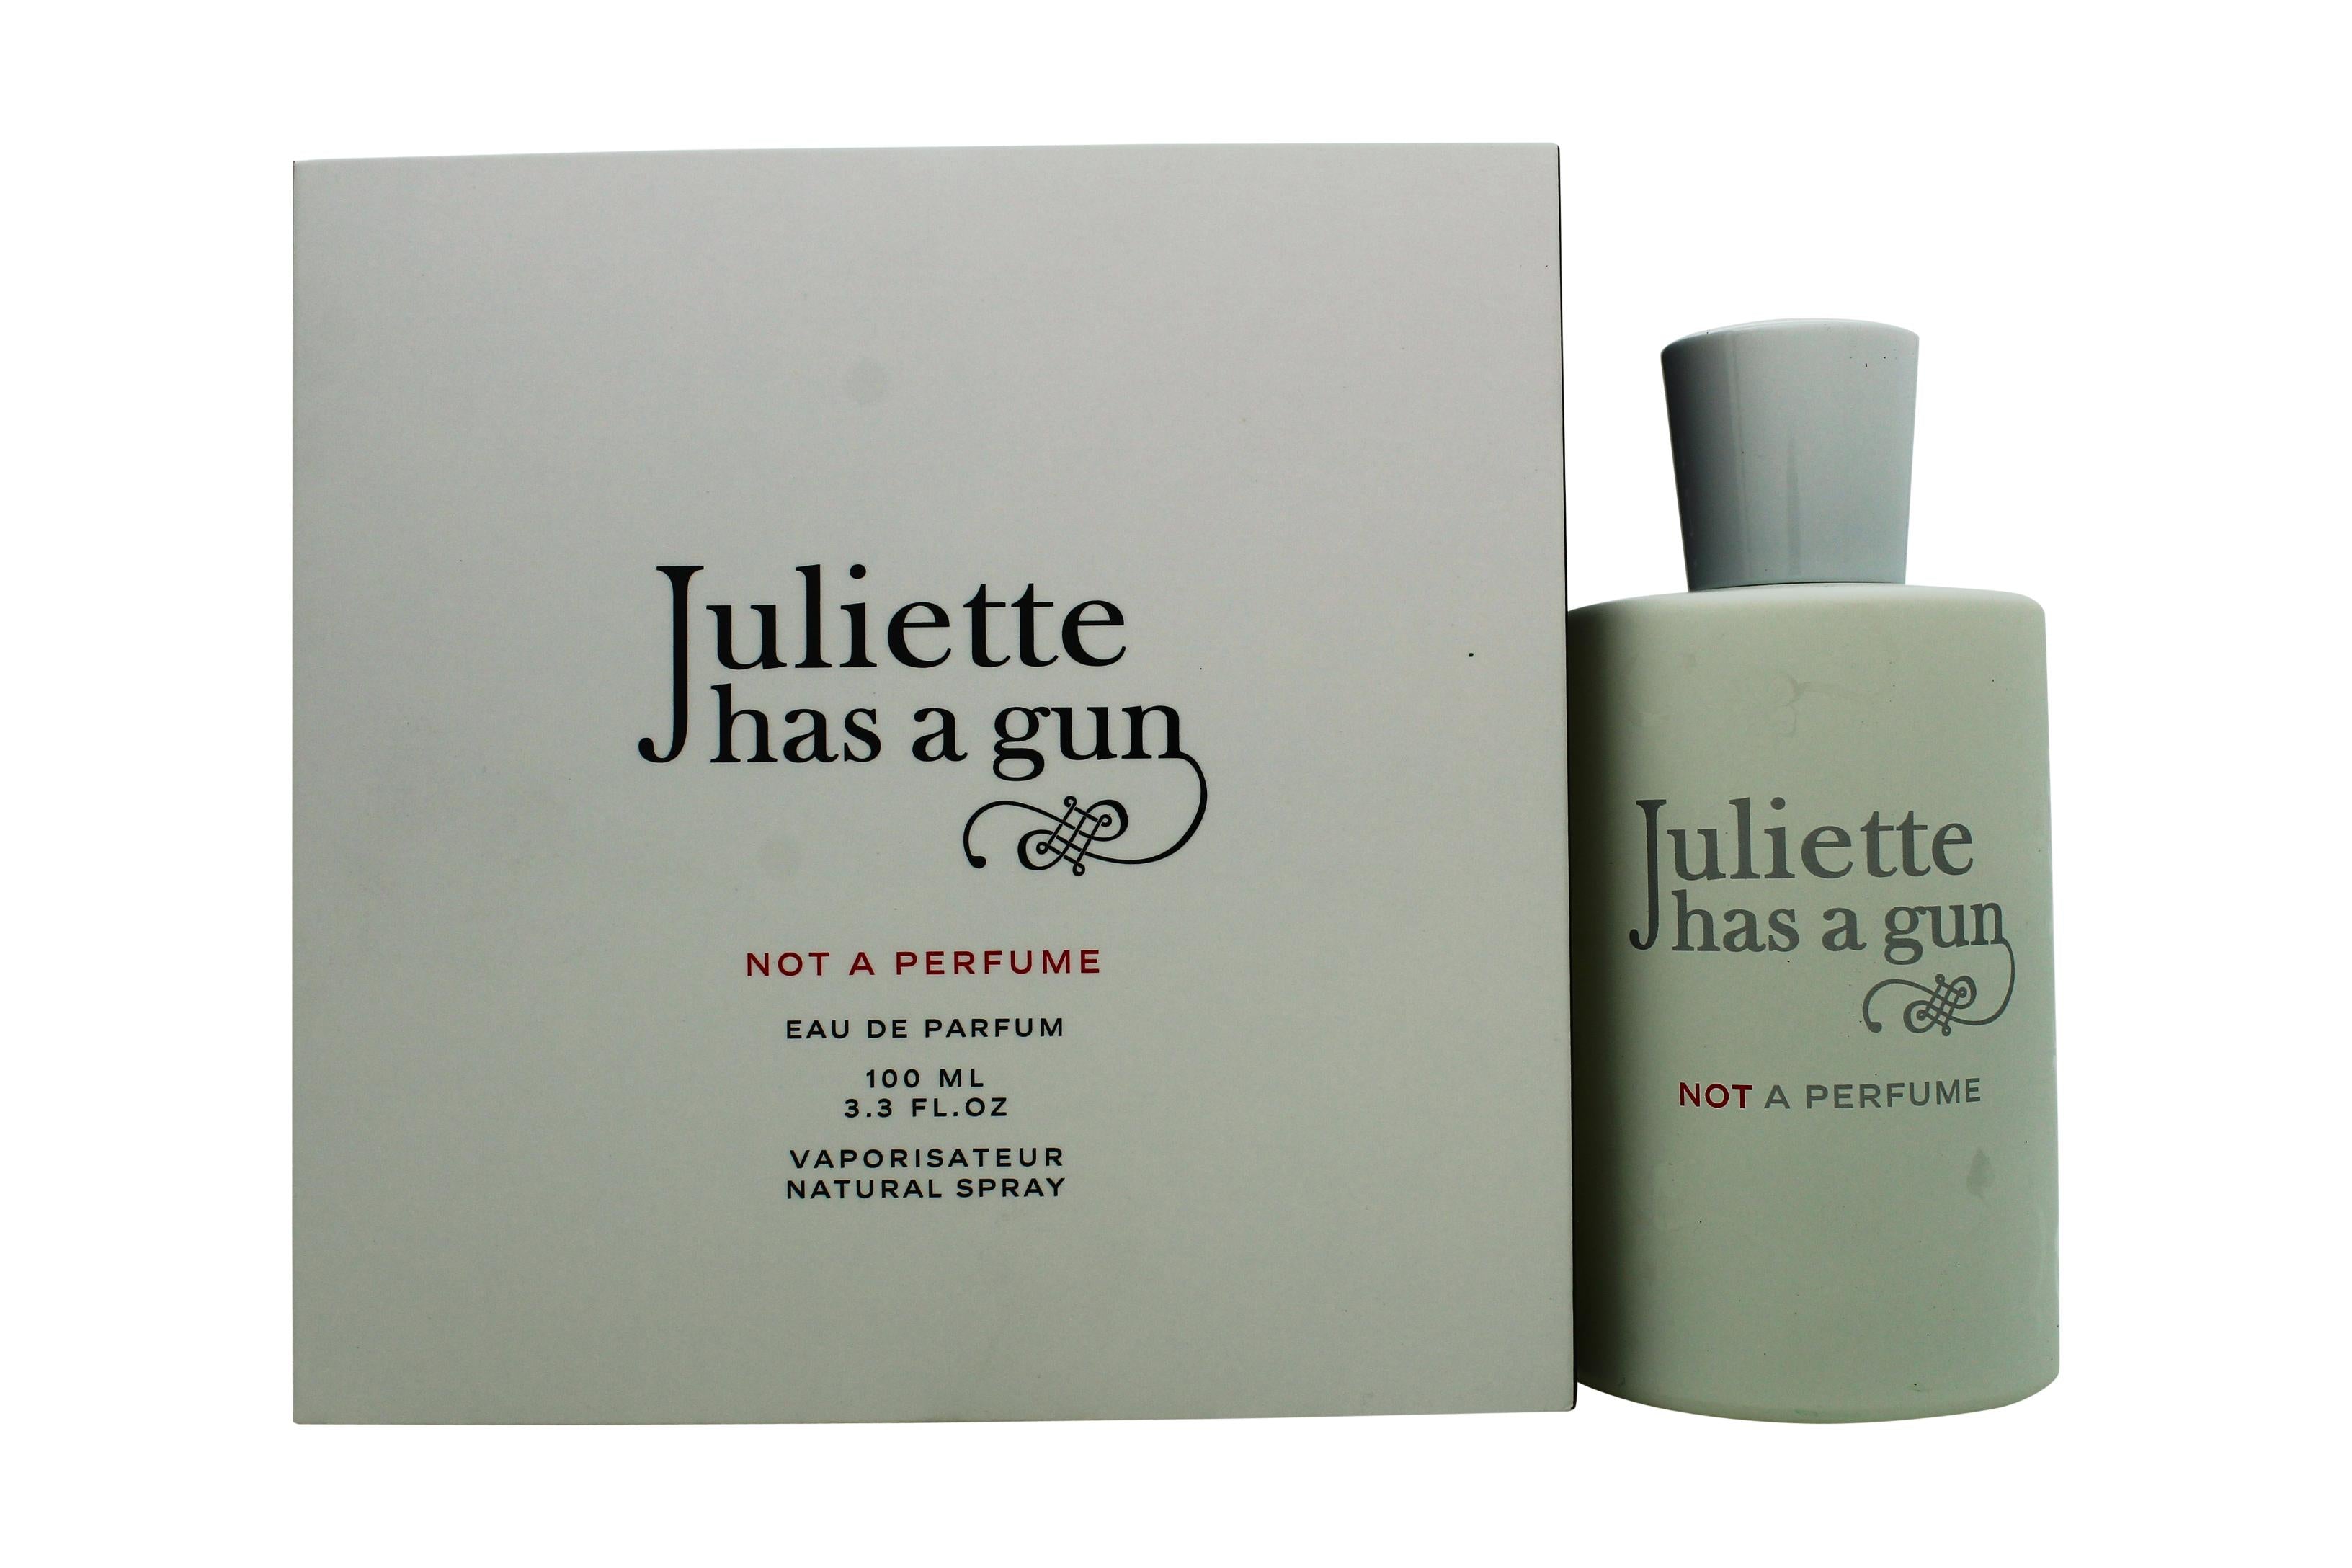 View Juliette Has A Gun Not a Perfume Eau de Parfum 100ml Spray information